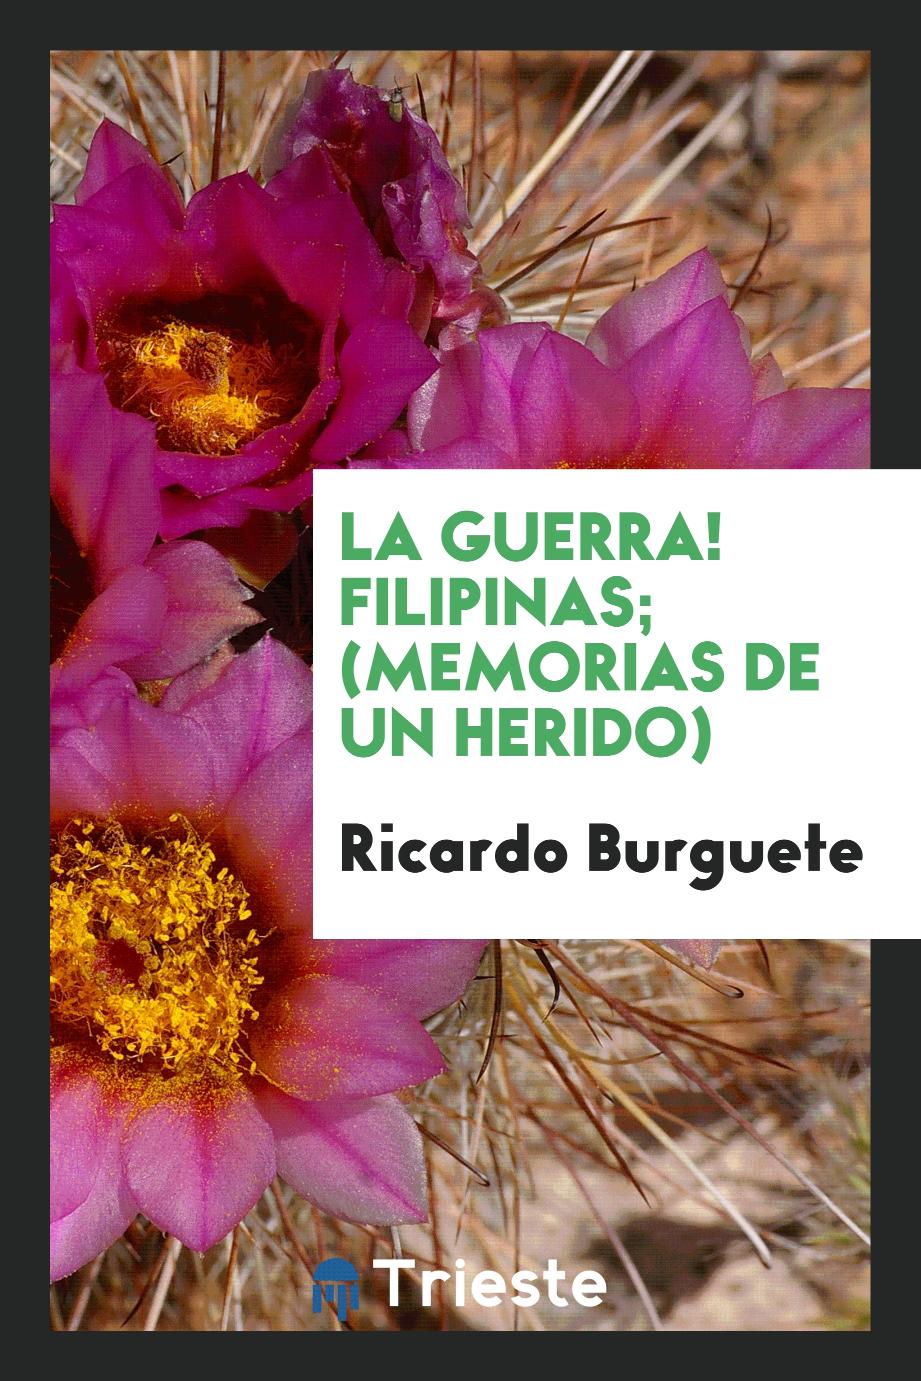 Ricardo Burguete - La guerra! Filipinas; (Memorias de un herido)